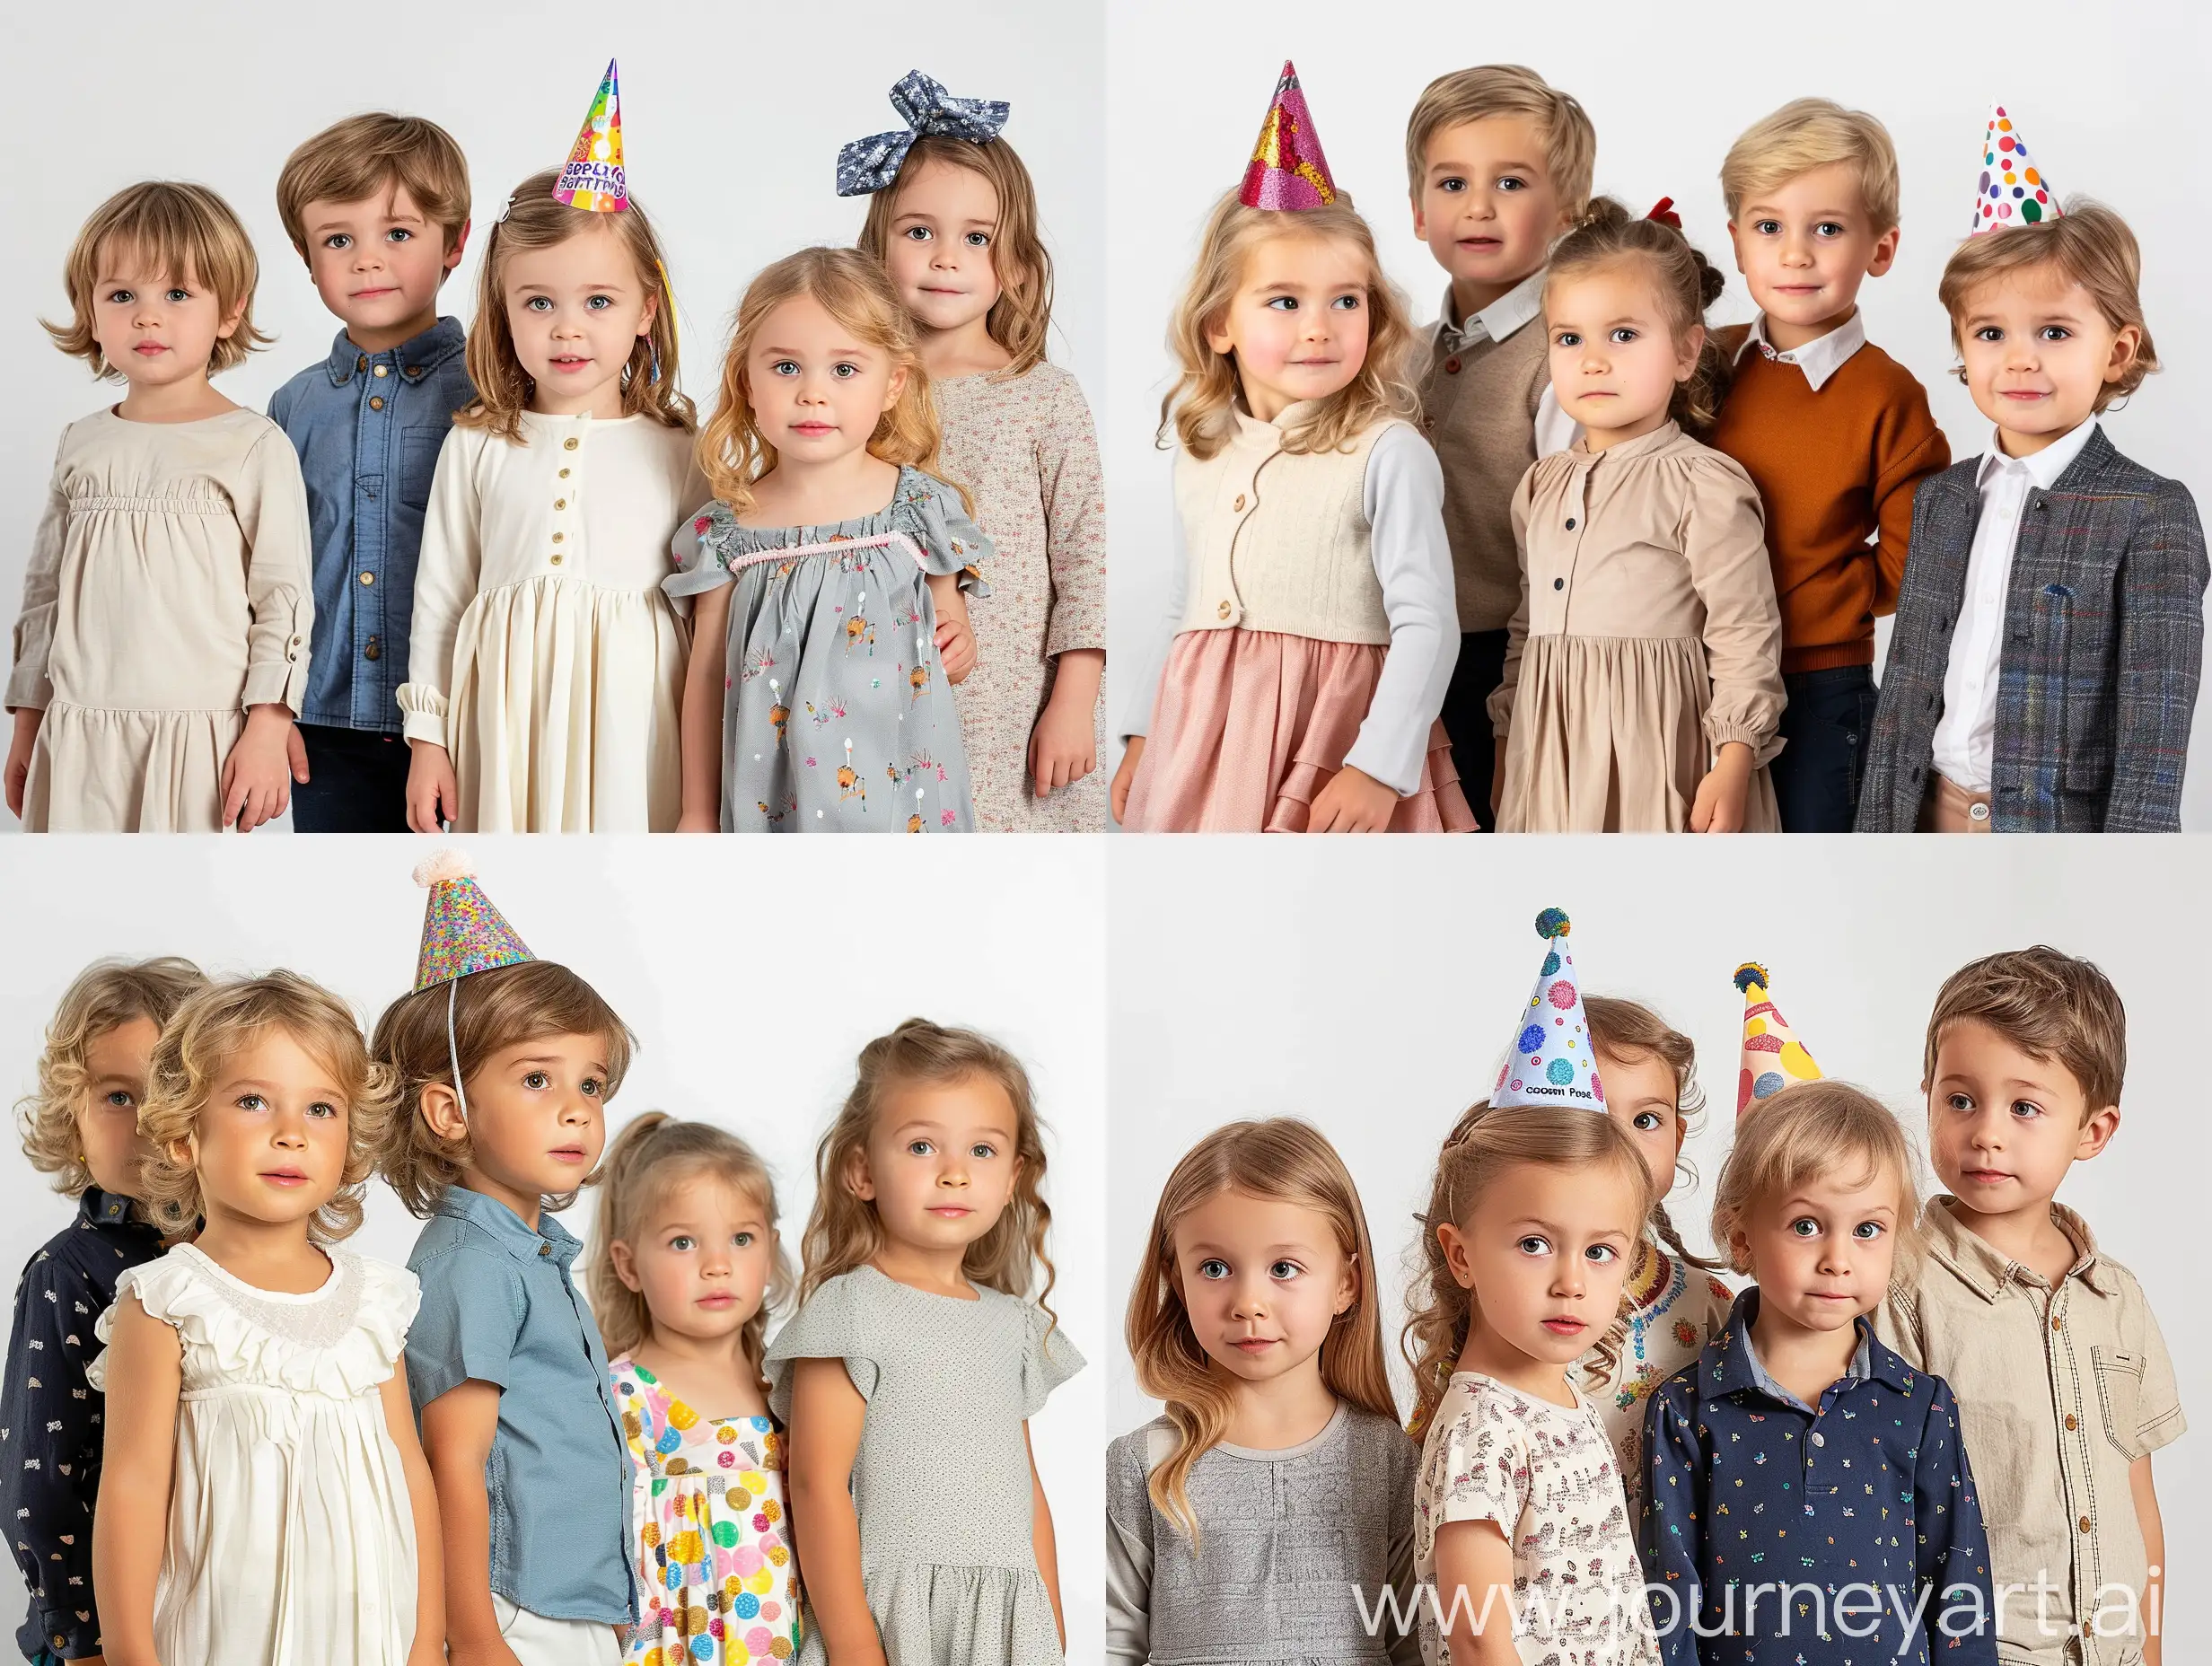 Joyful-European-Childrens-Birthday-Celebration-in-Vibrant-8K-HDR